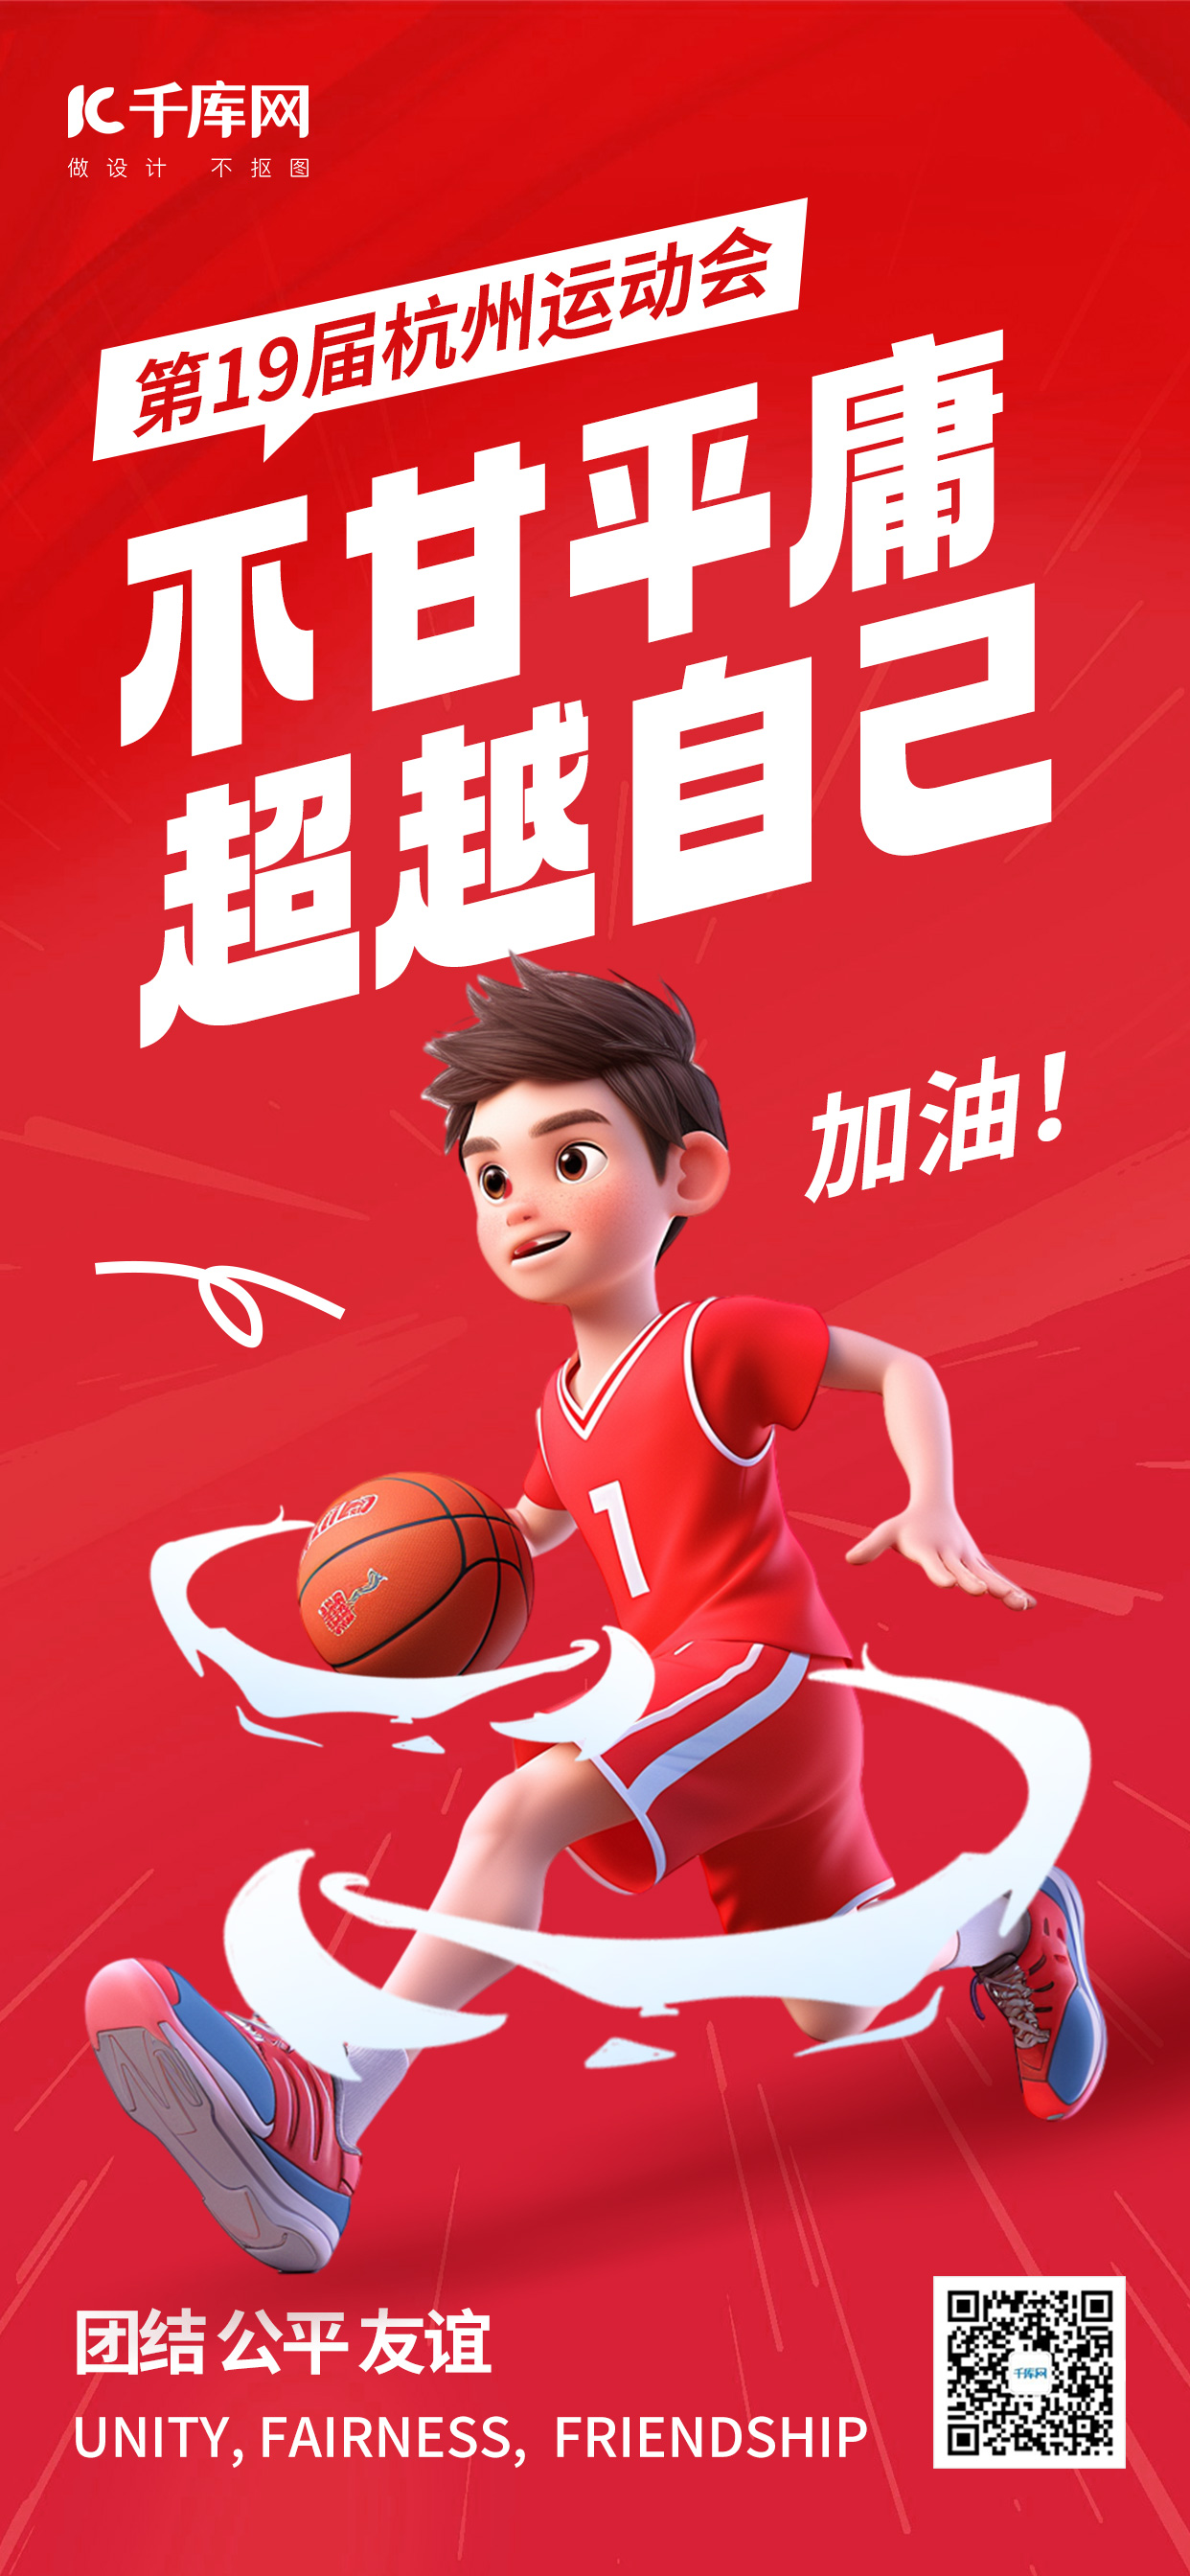 杭州运动会运动员红色AIGC模板广告宣传海报图片